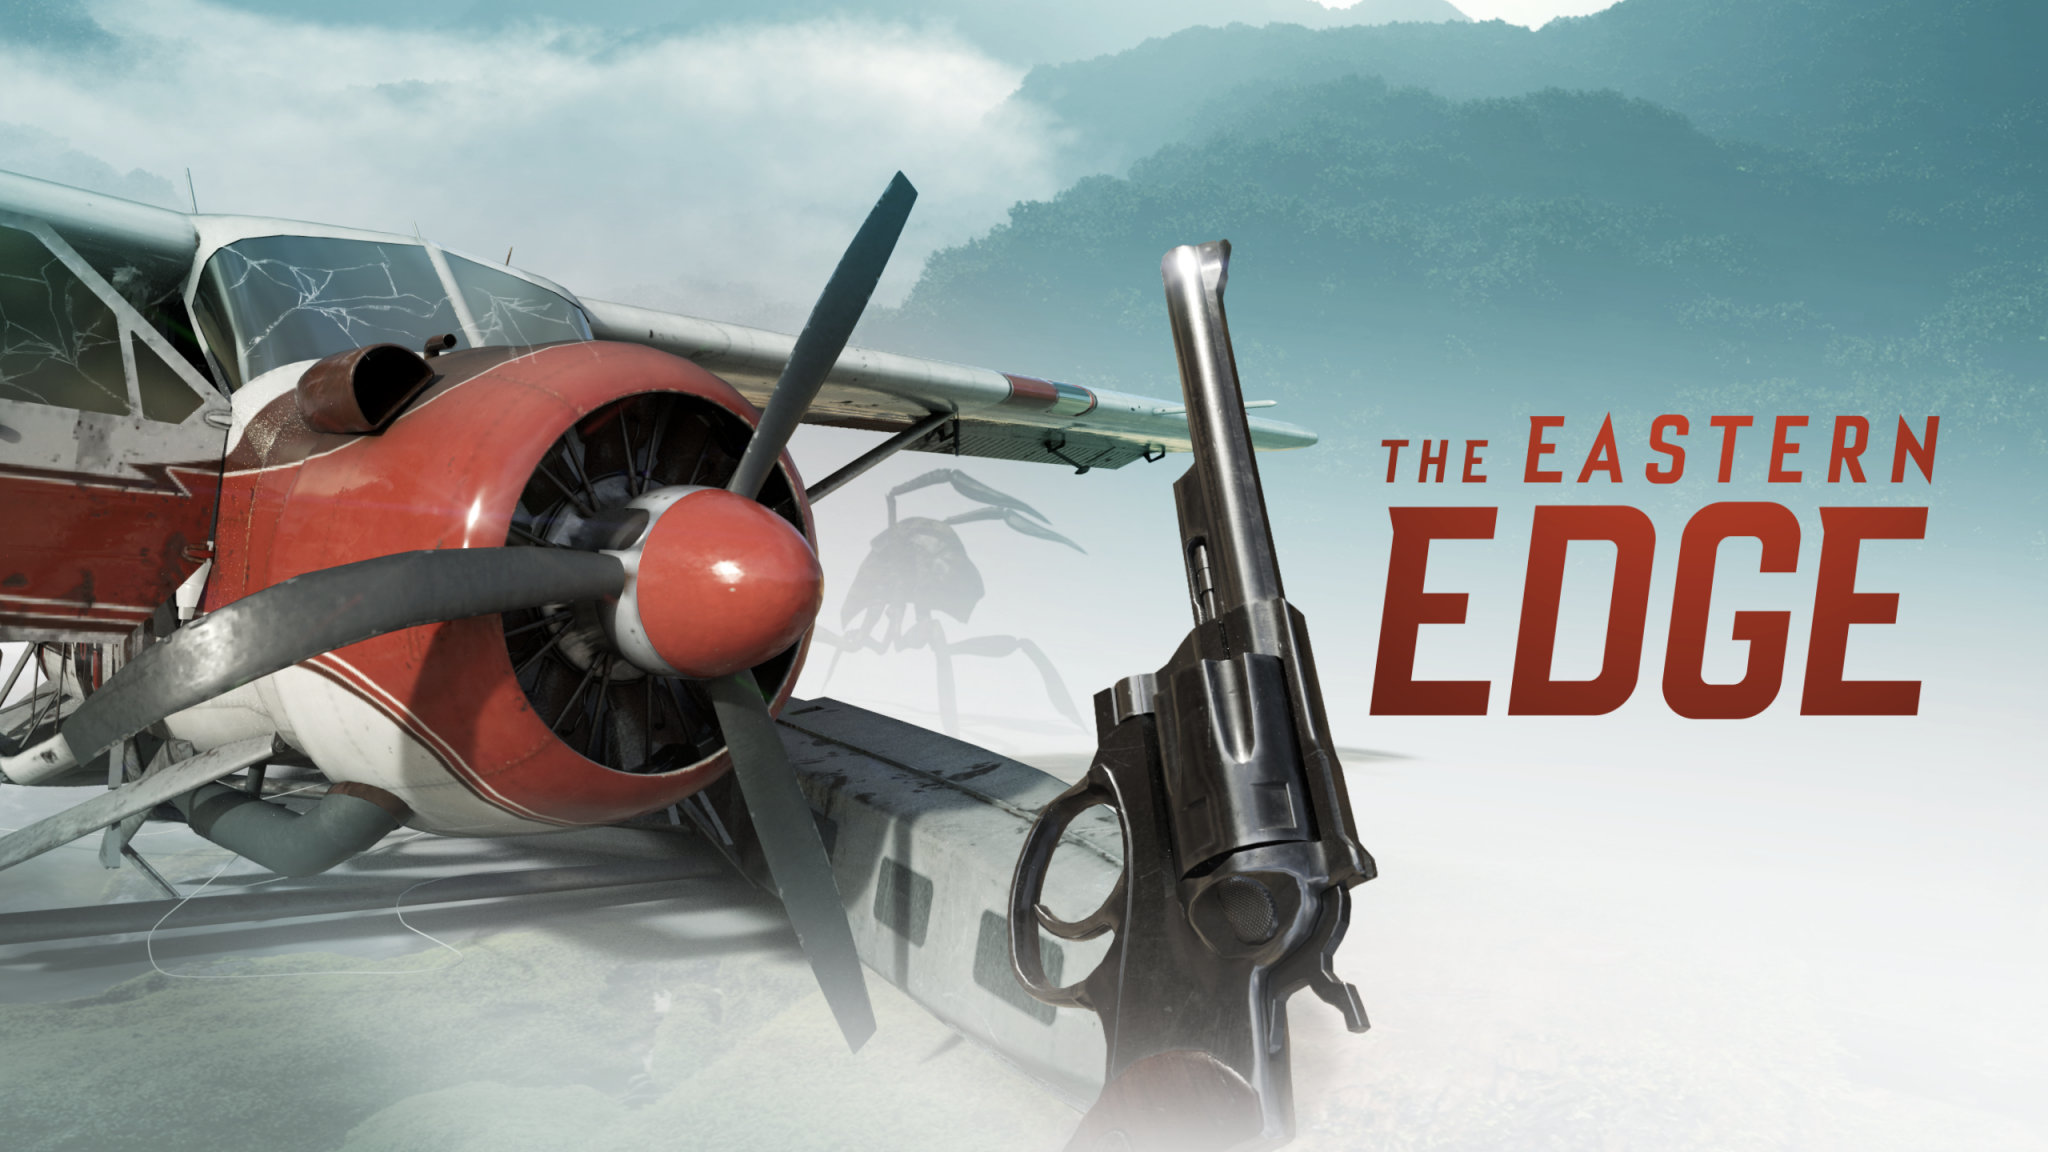 Edge vr. The Eastern Edge. Eastern Edge of Russia. The Eastern Edge of Russia logo.